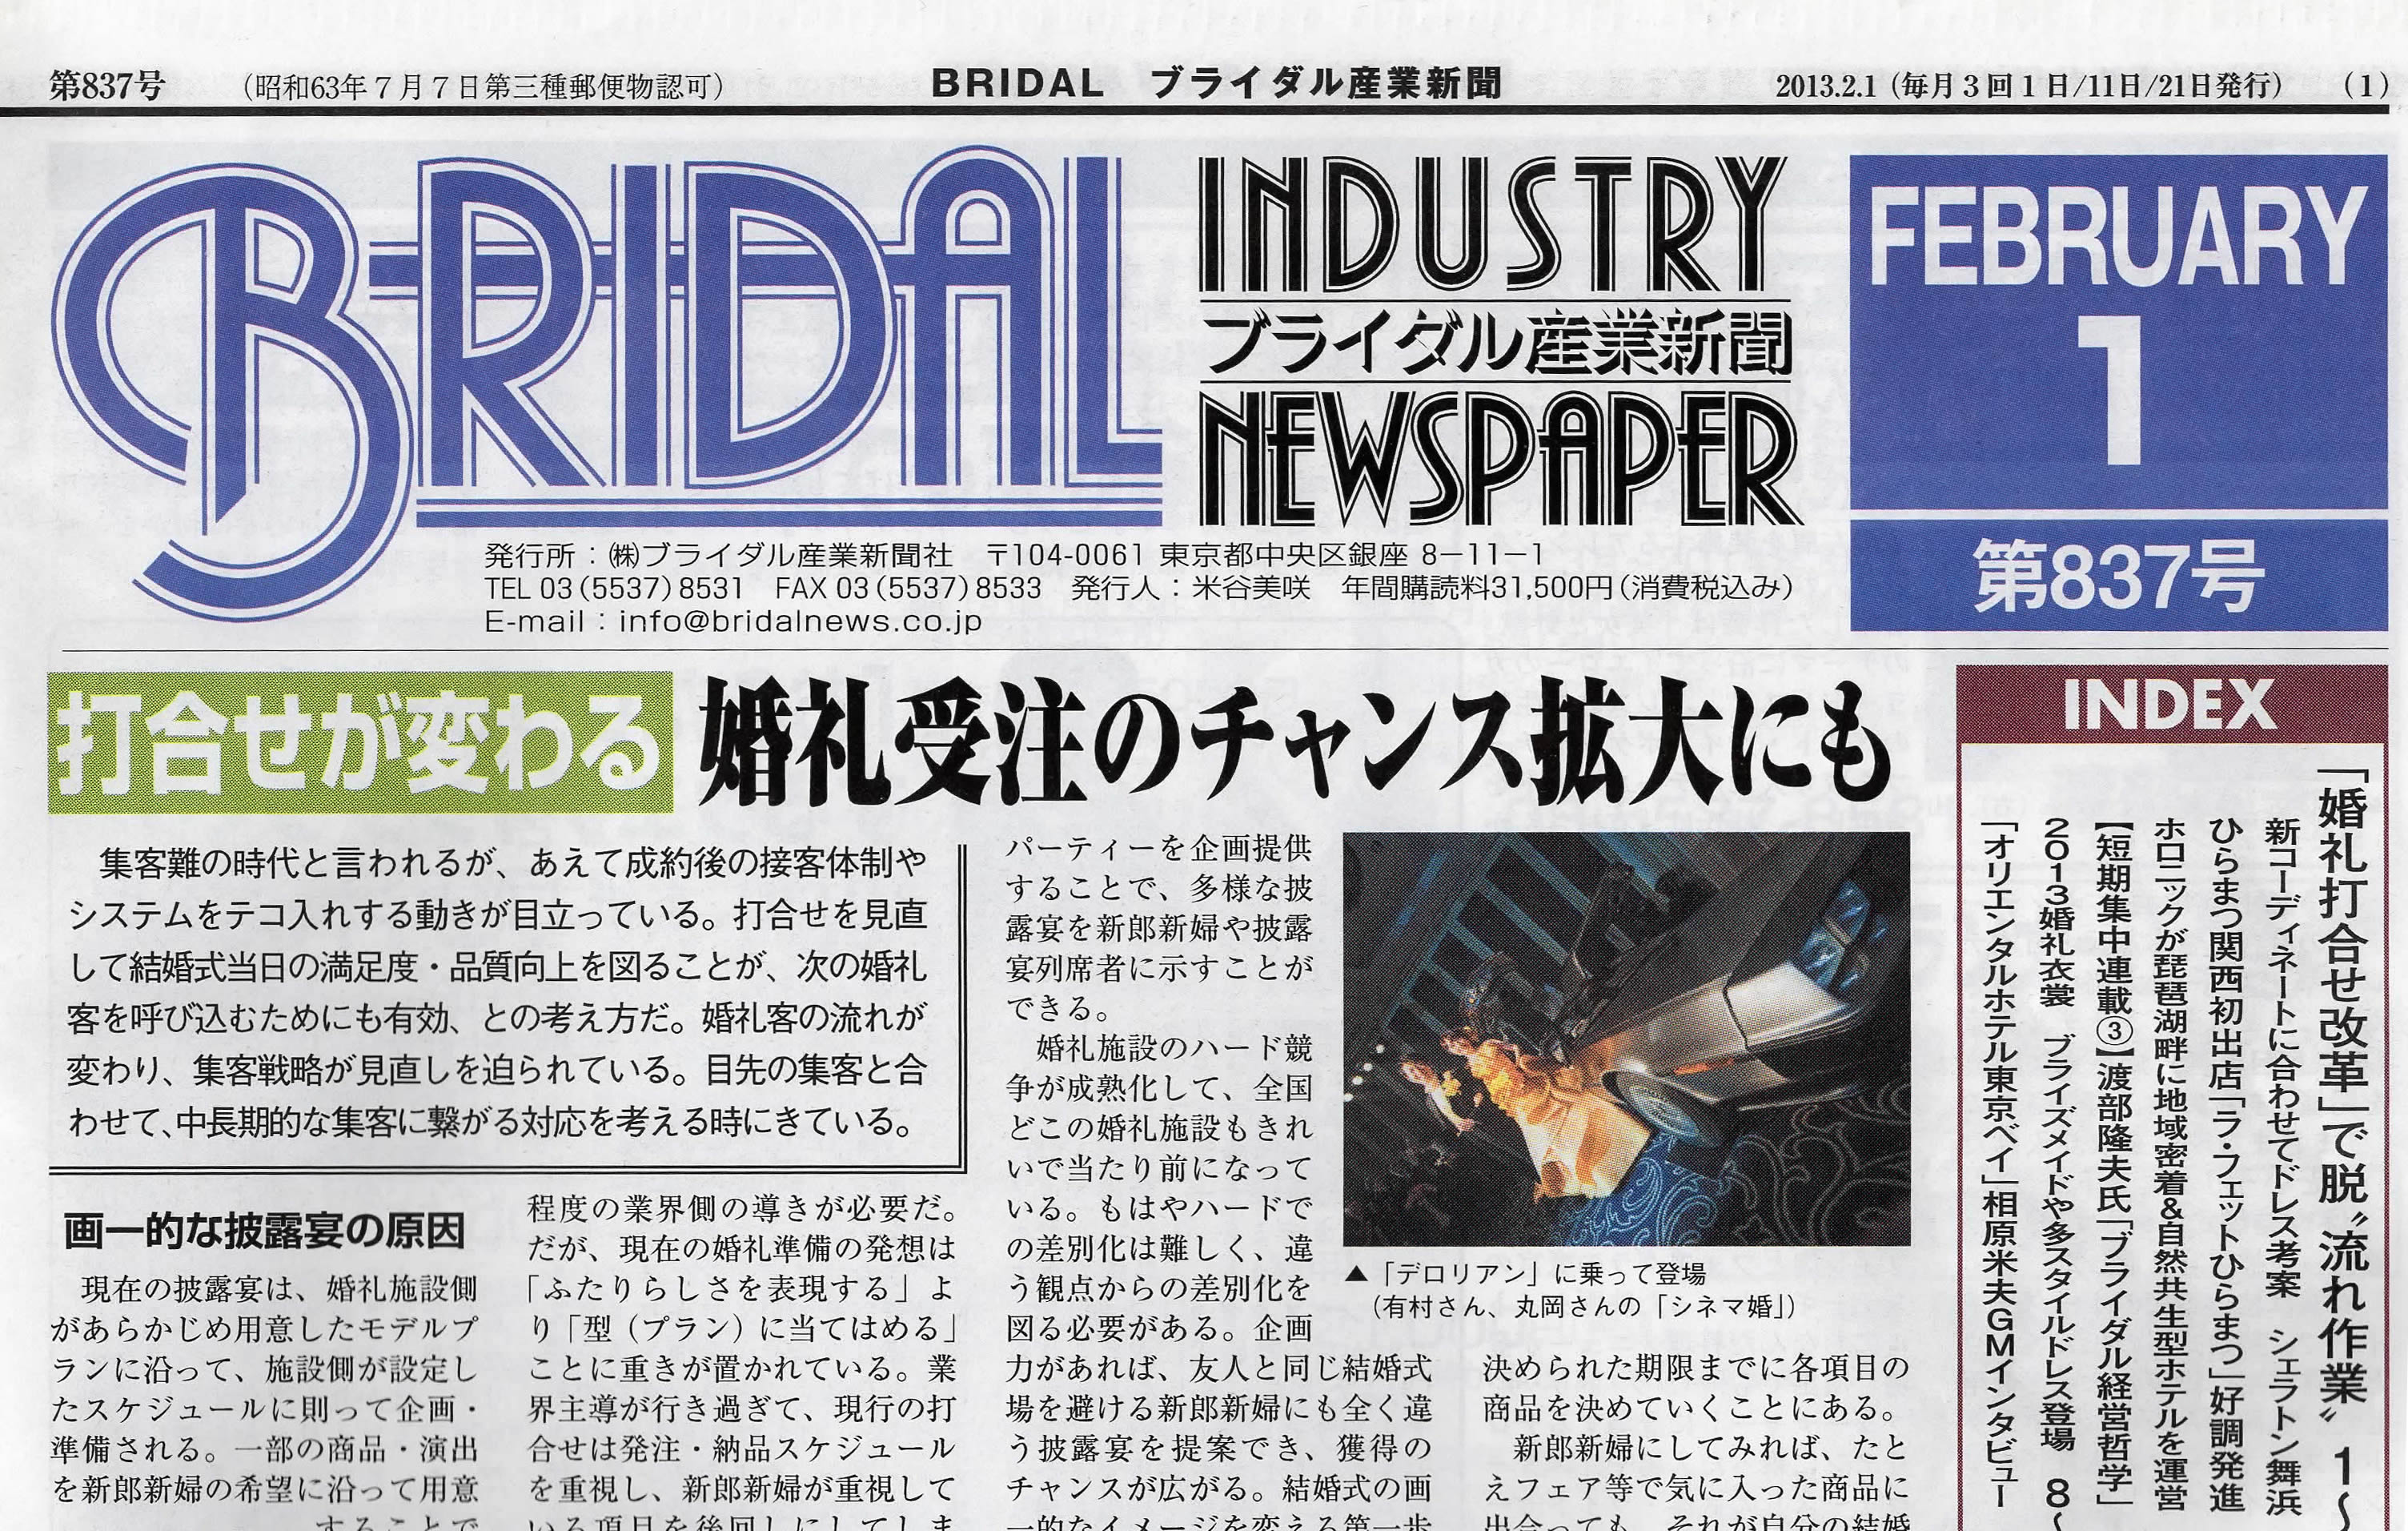 ブライダル産業新聞「BRIDAL 2月号」に弊社が取り上げられました